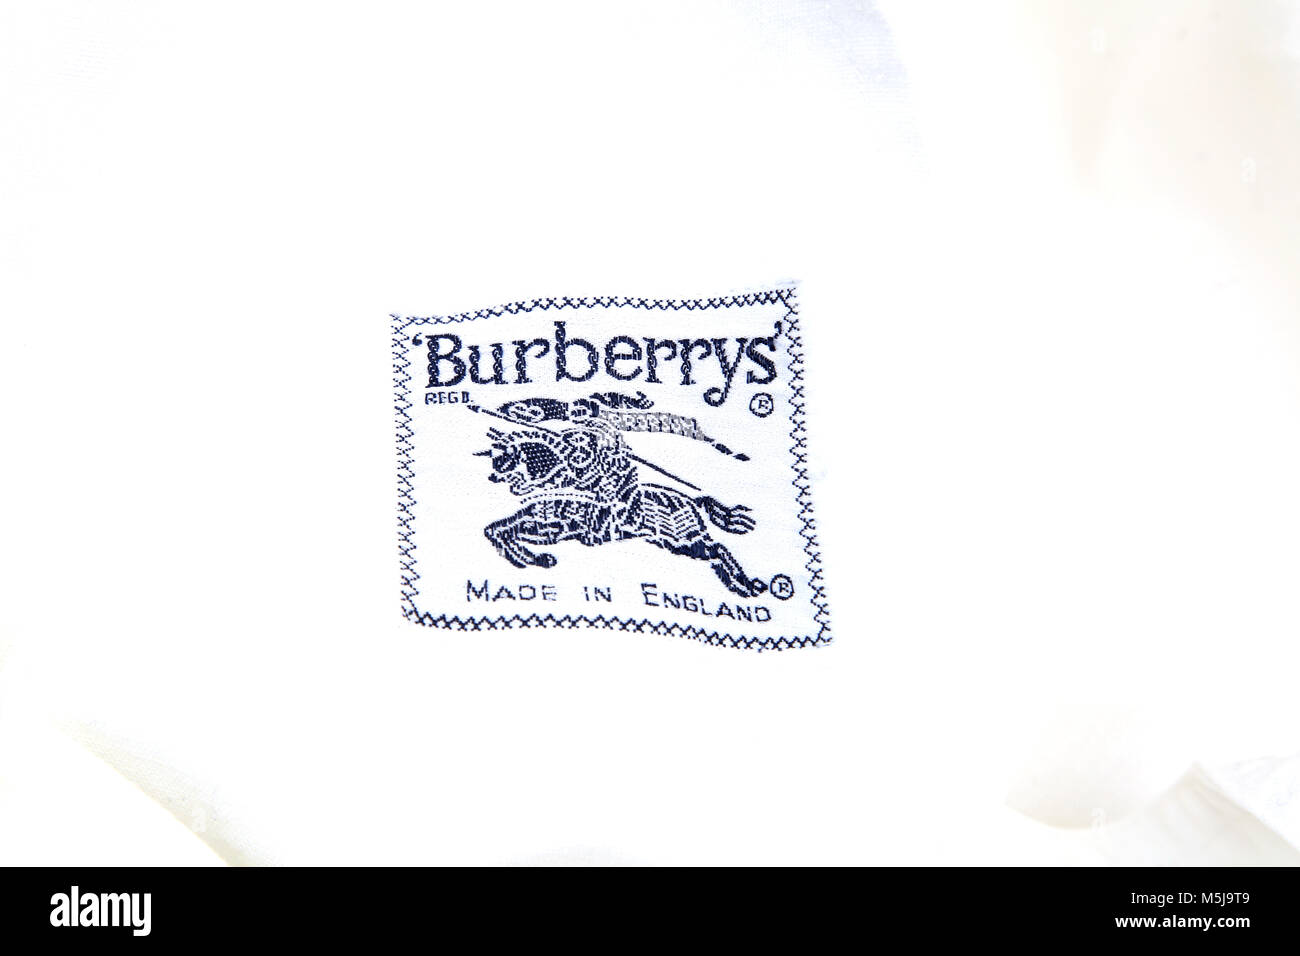 étiquette burberry Banque de photographies et d'images à haute résolution -  Alamy